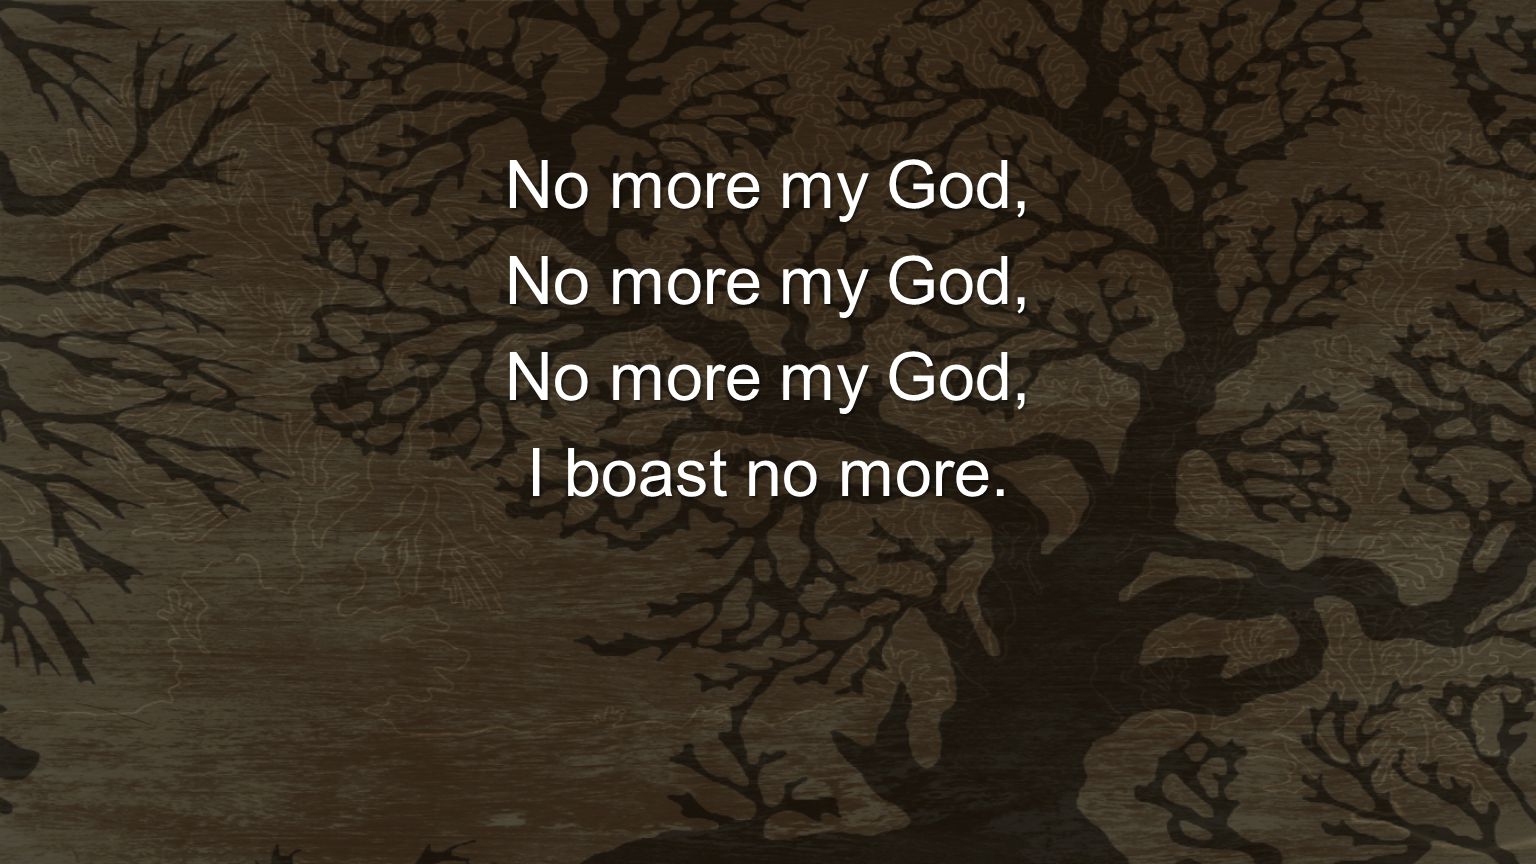 No more my God, I boast no more.